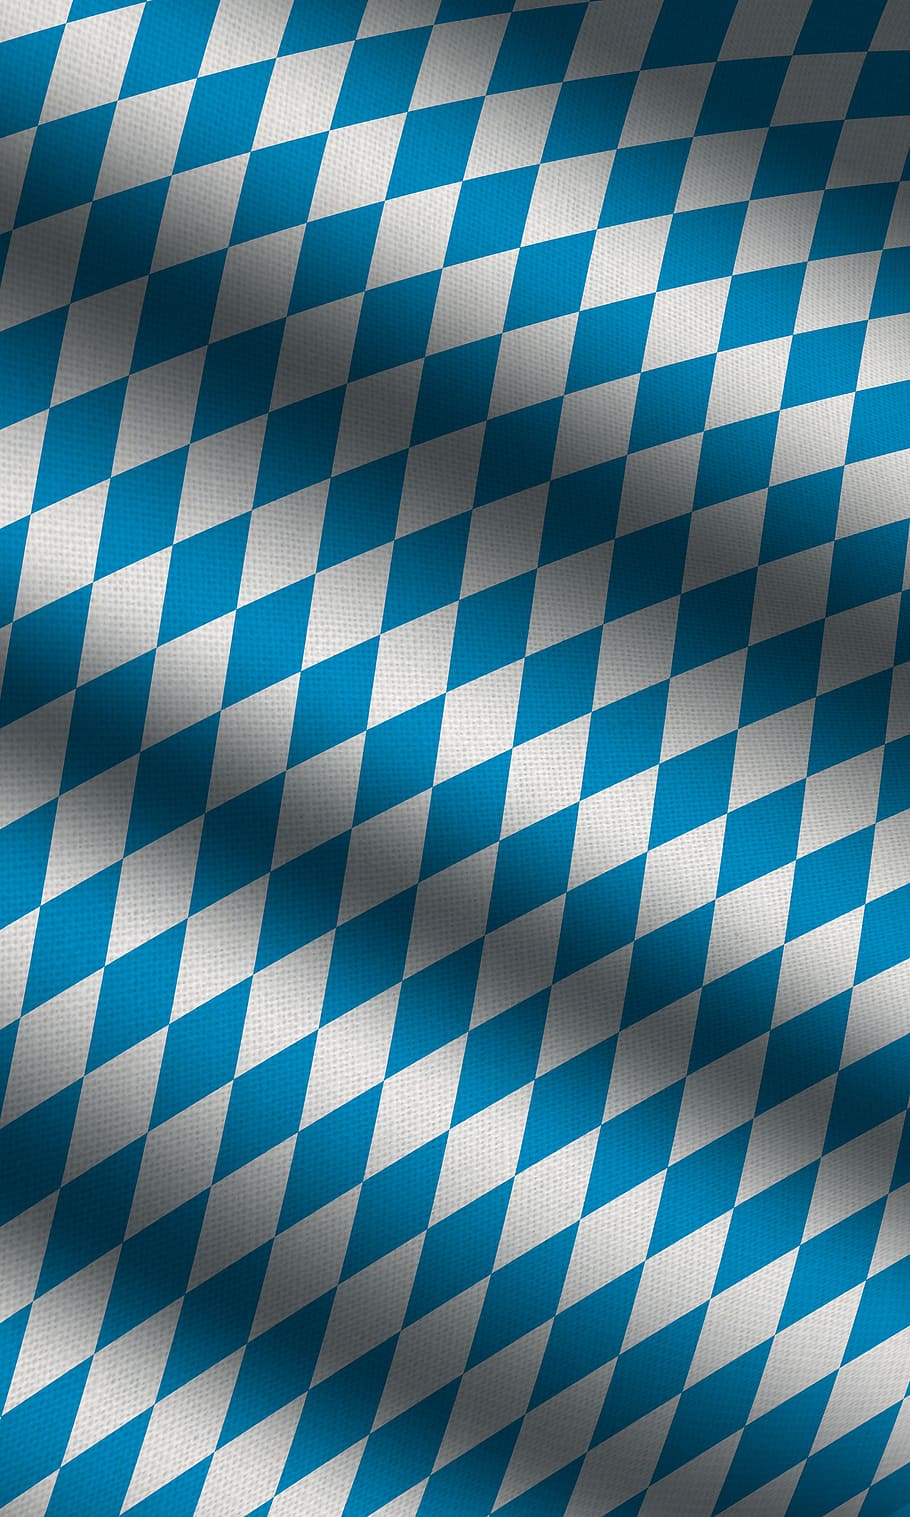 bavaria, flag, blue, germany, bavarian flag, white blue, checked Pattern